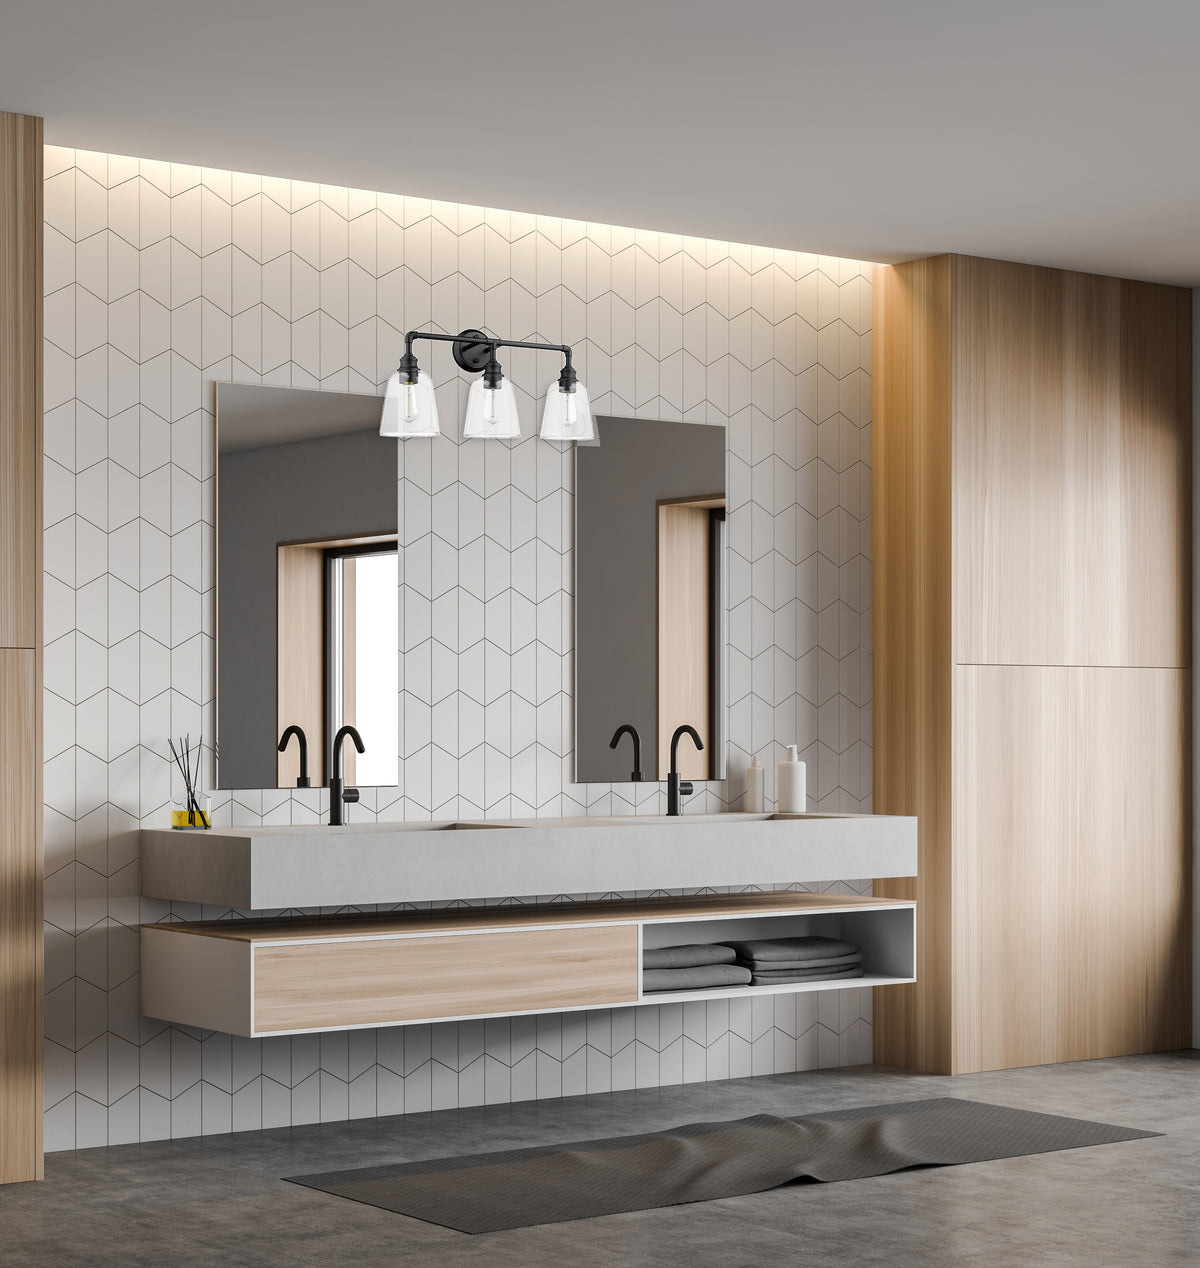 Black bathroom vanity light fixtures with 3 light over mirror